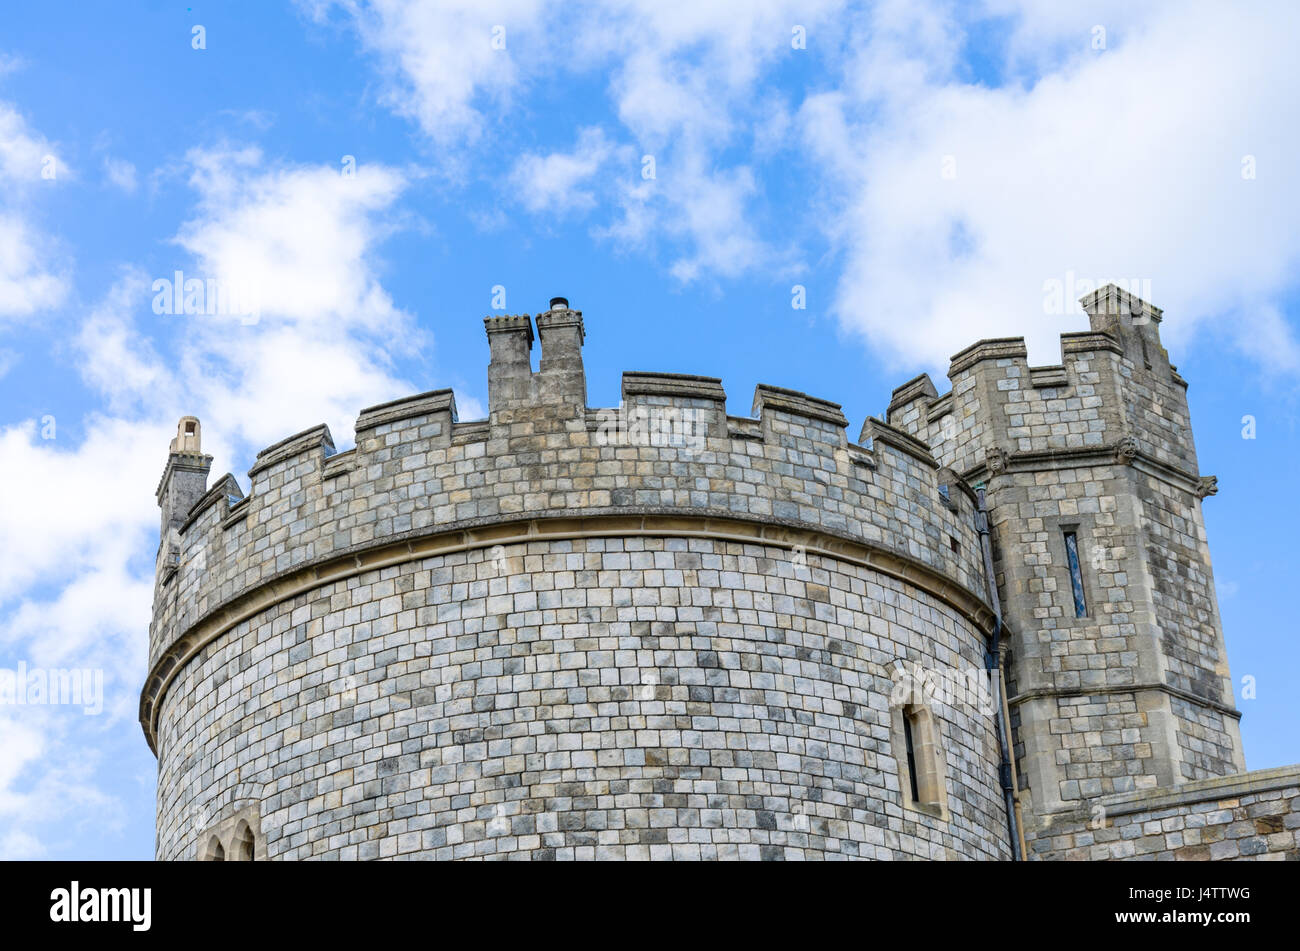 La parte superiore di un tour che fa parte della parete esterna del Castello di Windsor in Windsor, Berkshire, Regno Unito. Foto Stock